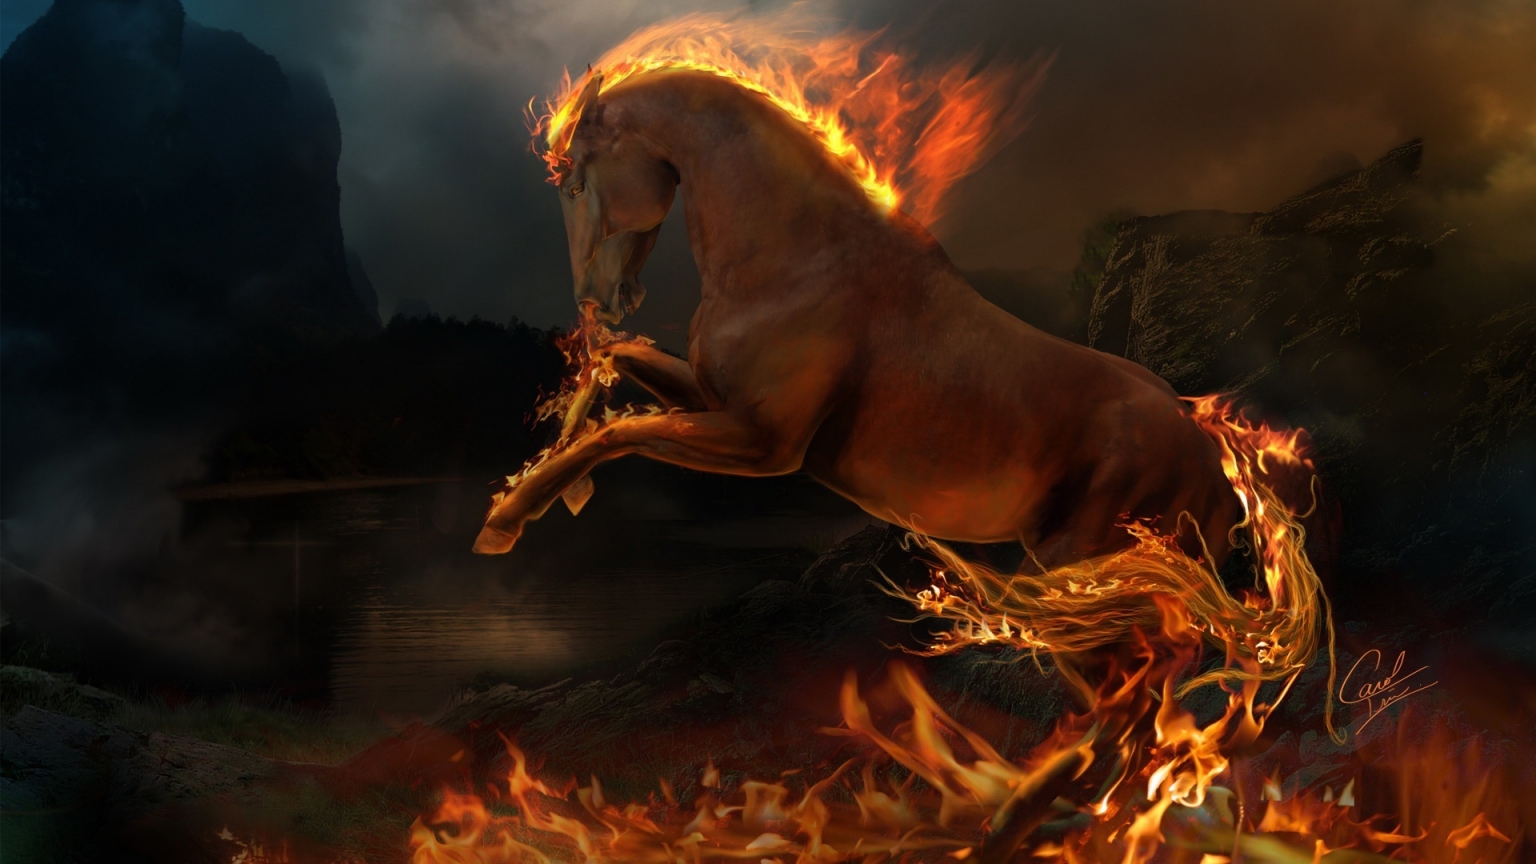 3D burning horse for 1536 x 864 HDTV resolution